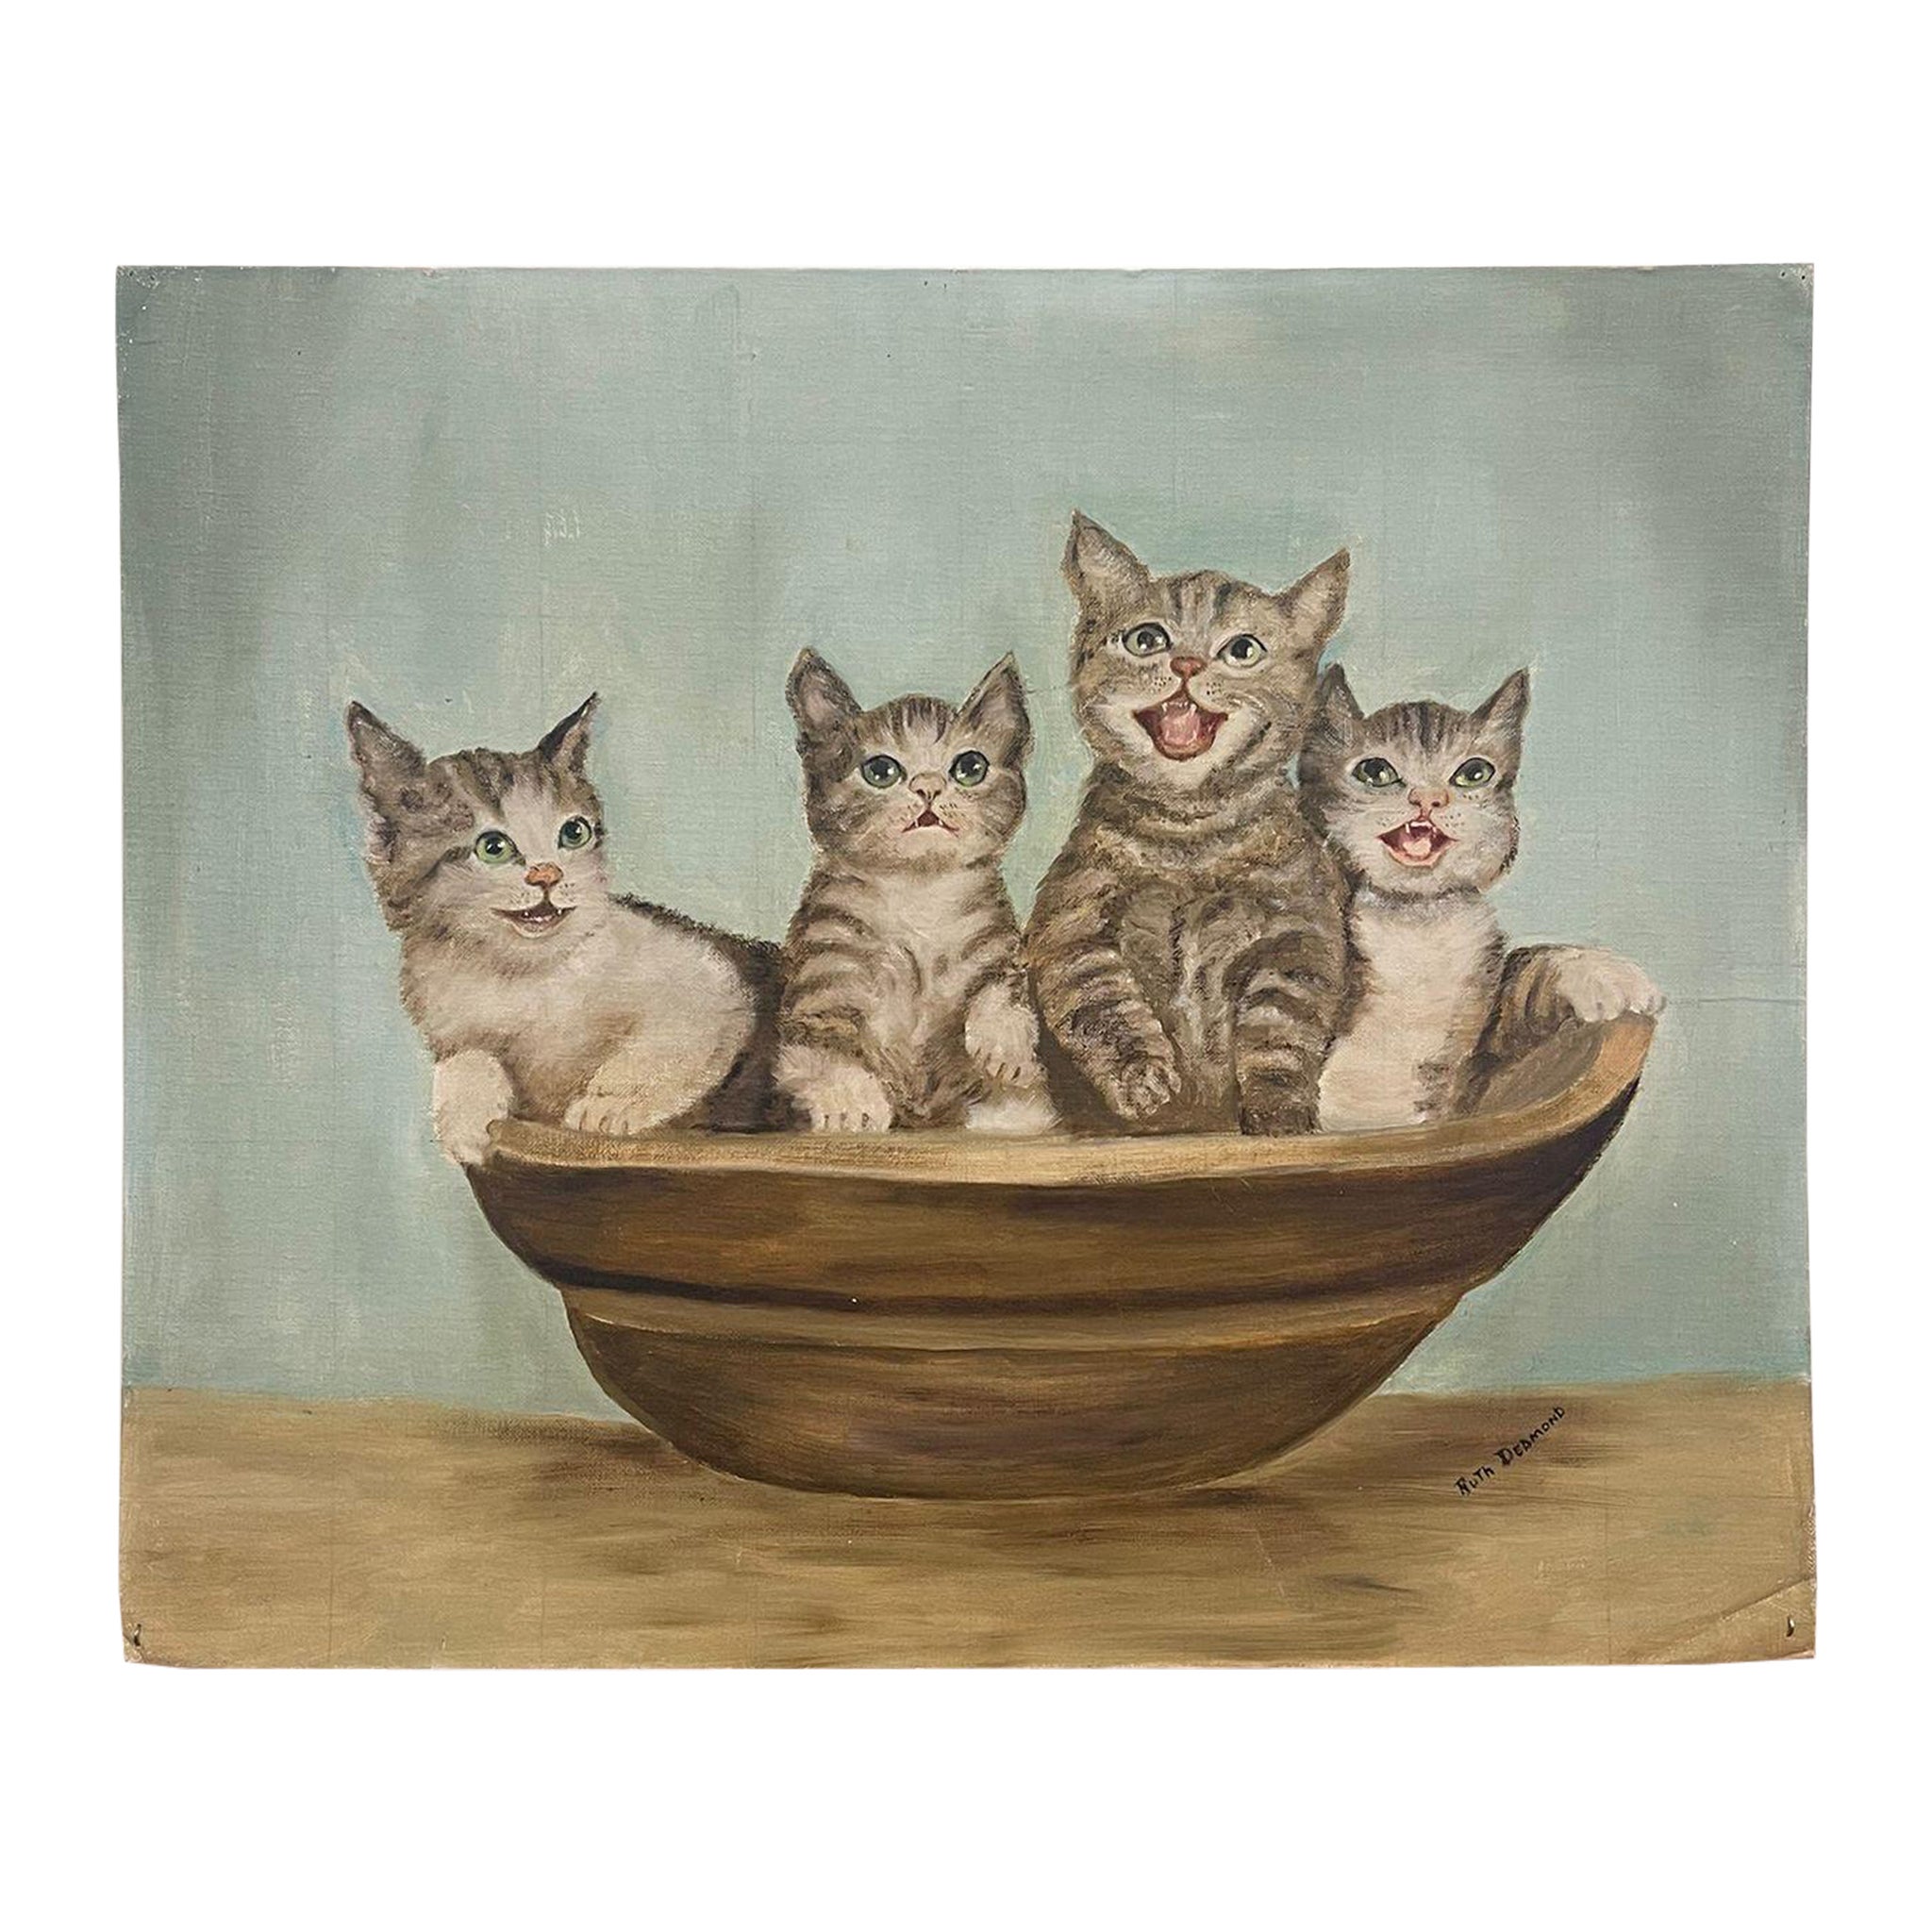 Signiertes Originalgemälde von Kitten in einem Korb, Vintage.